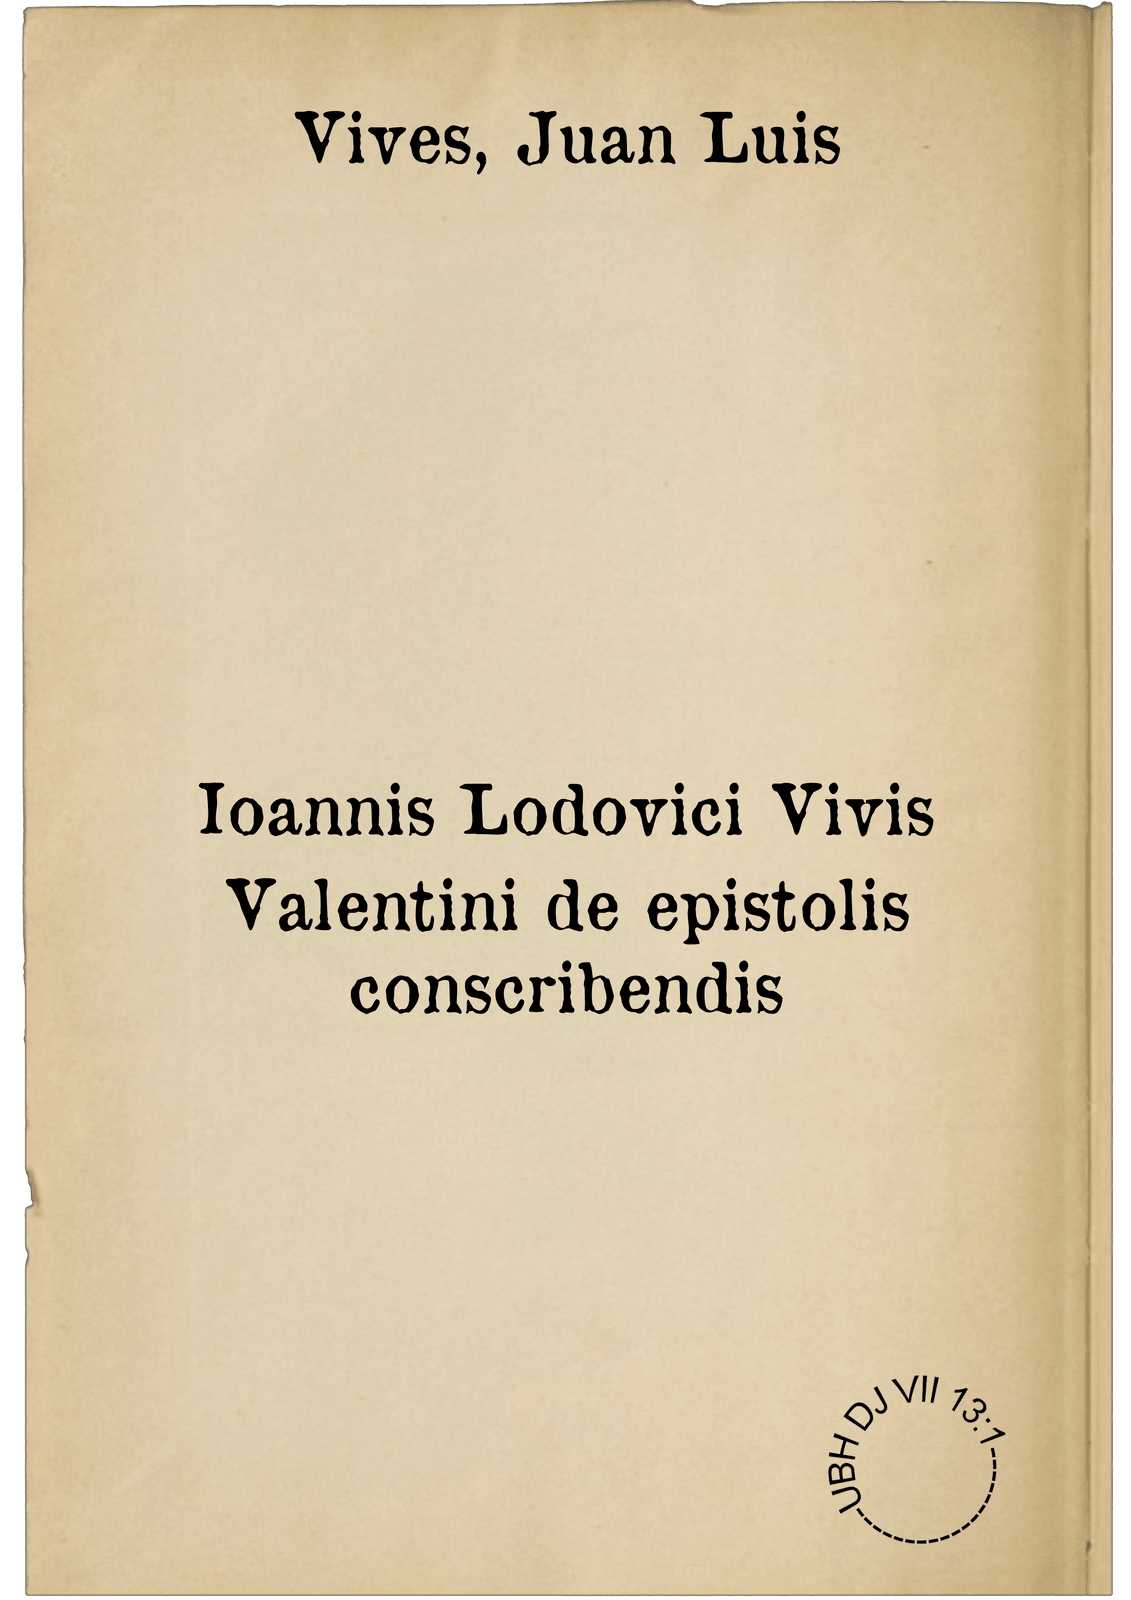 Ioannis Lodovici Vivis Valentini de epistolis conscribendis